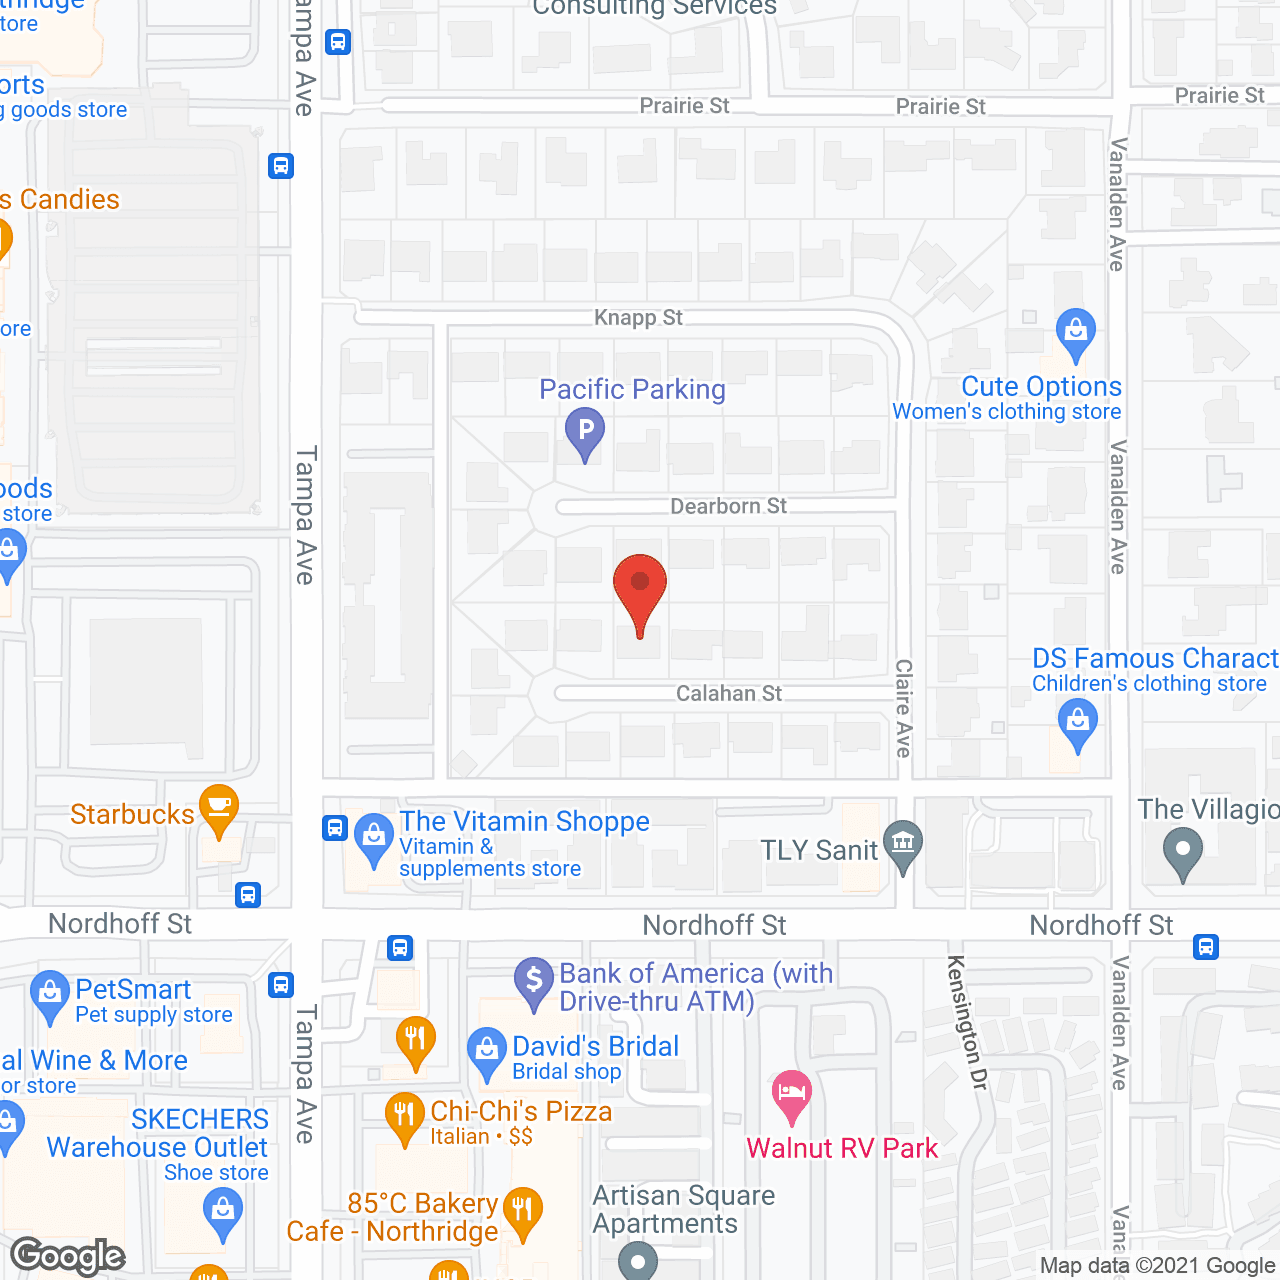 Senior Care at Northridge in google map